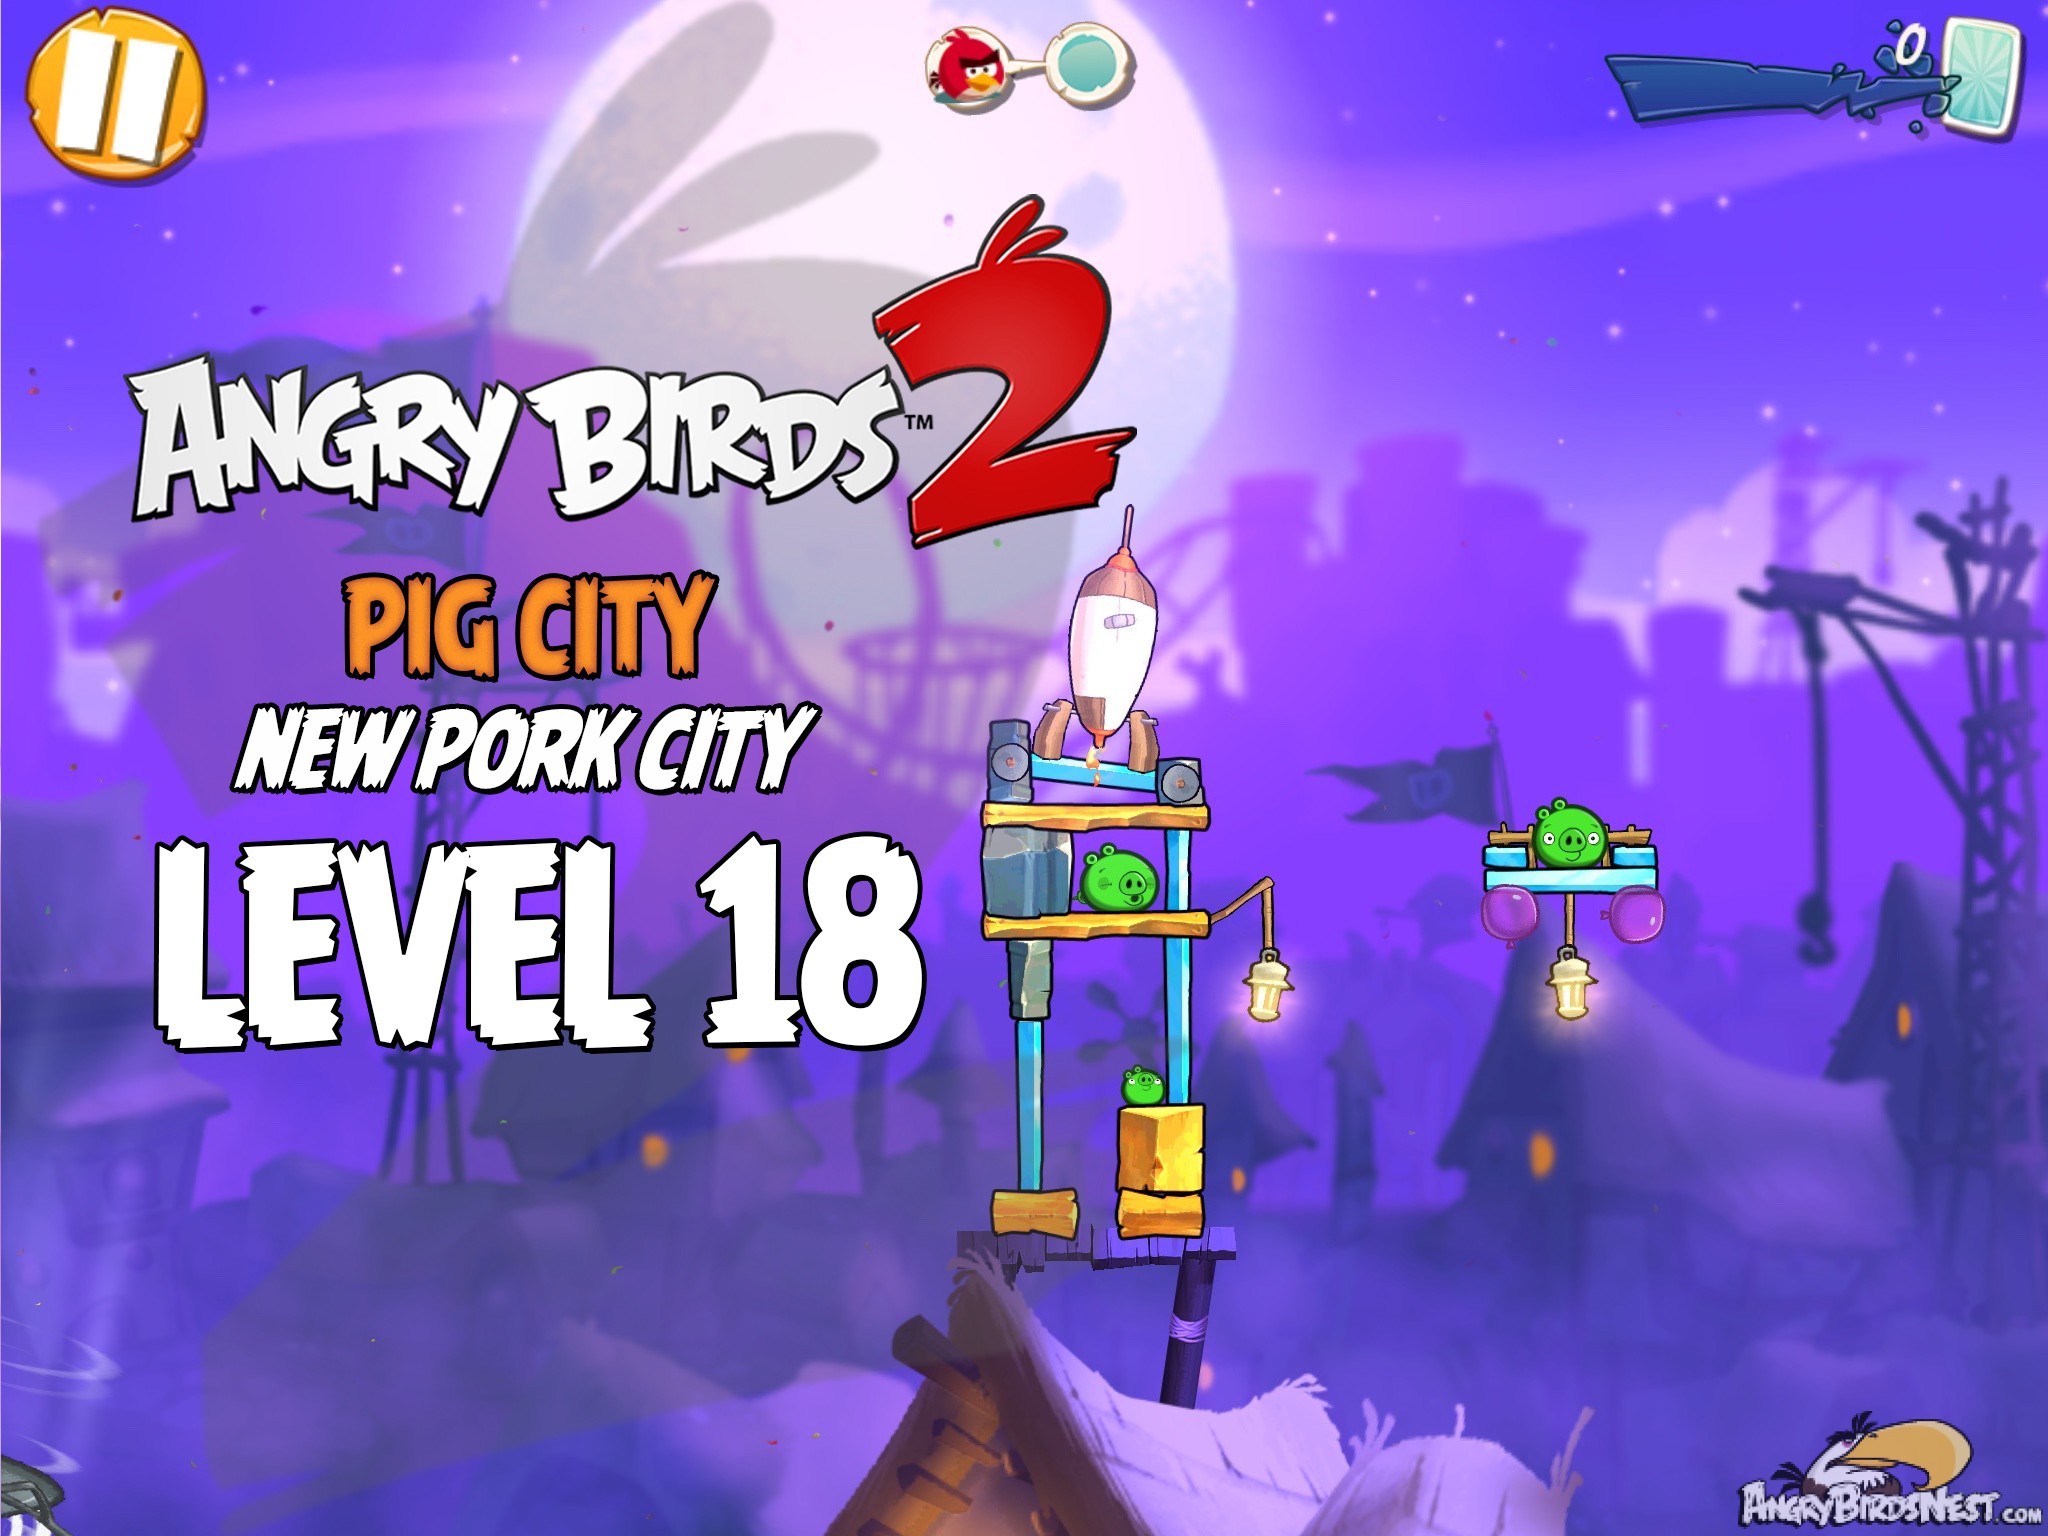 Angry Birds 2 Pig City New Pork City Level 18